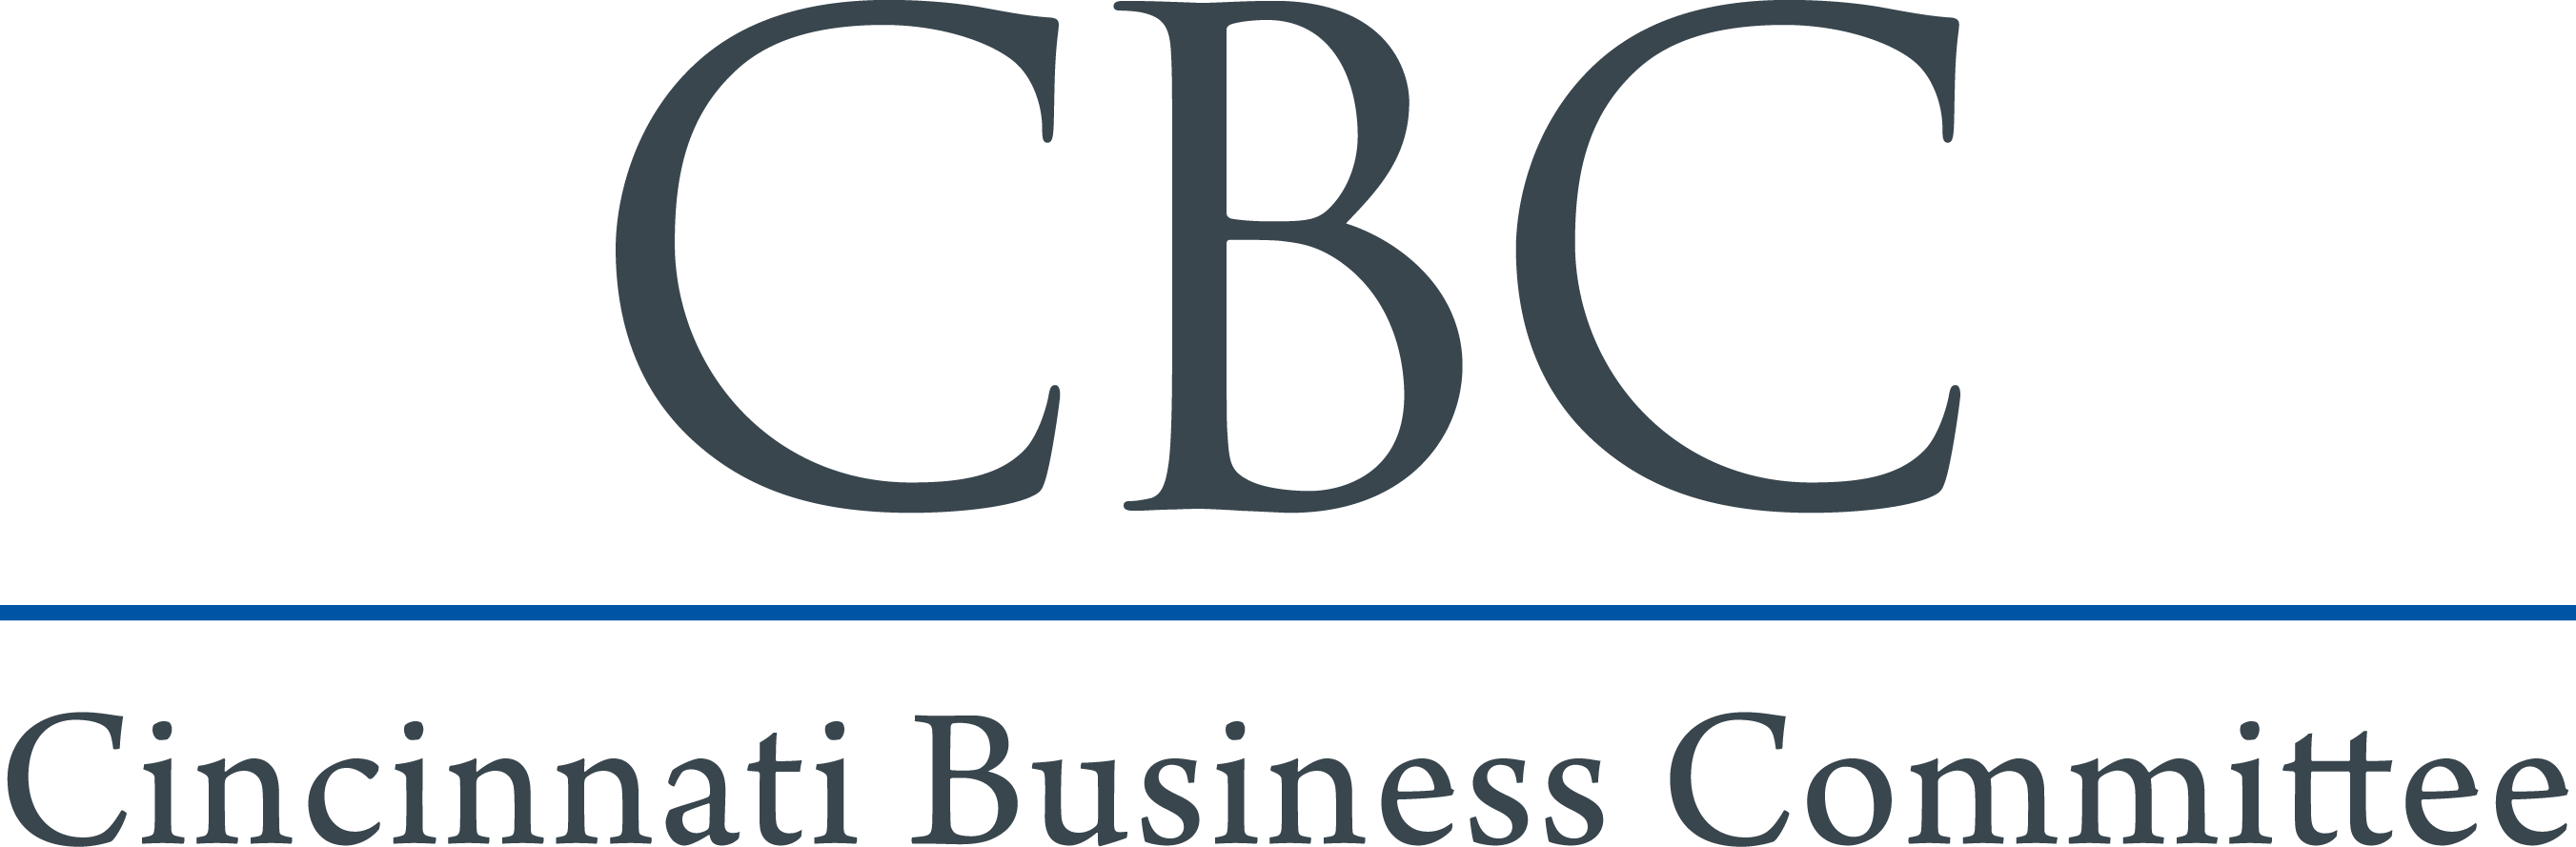 CBC-Logo-final